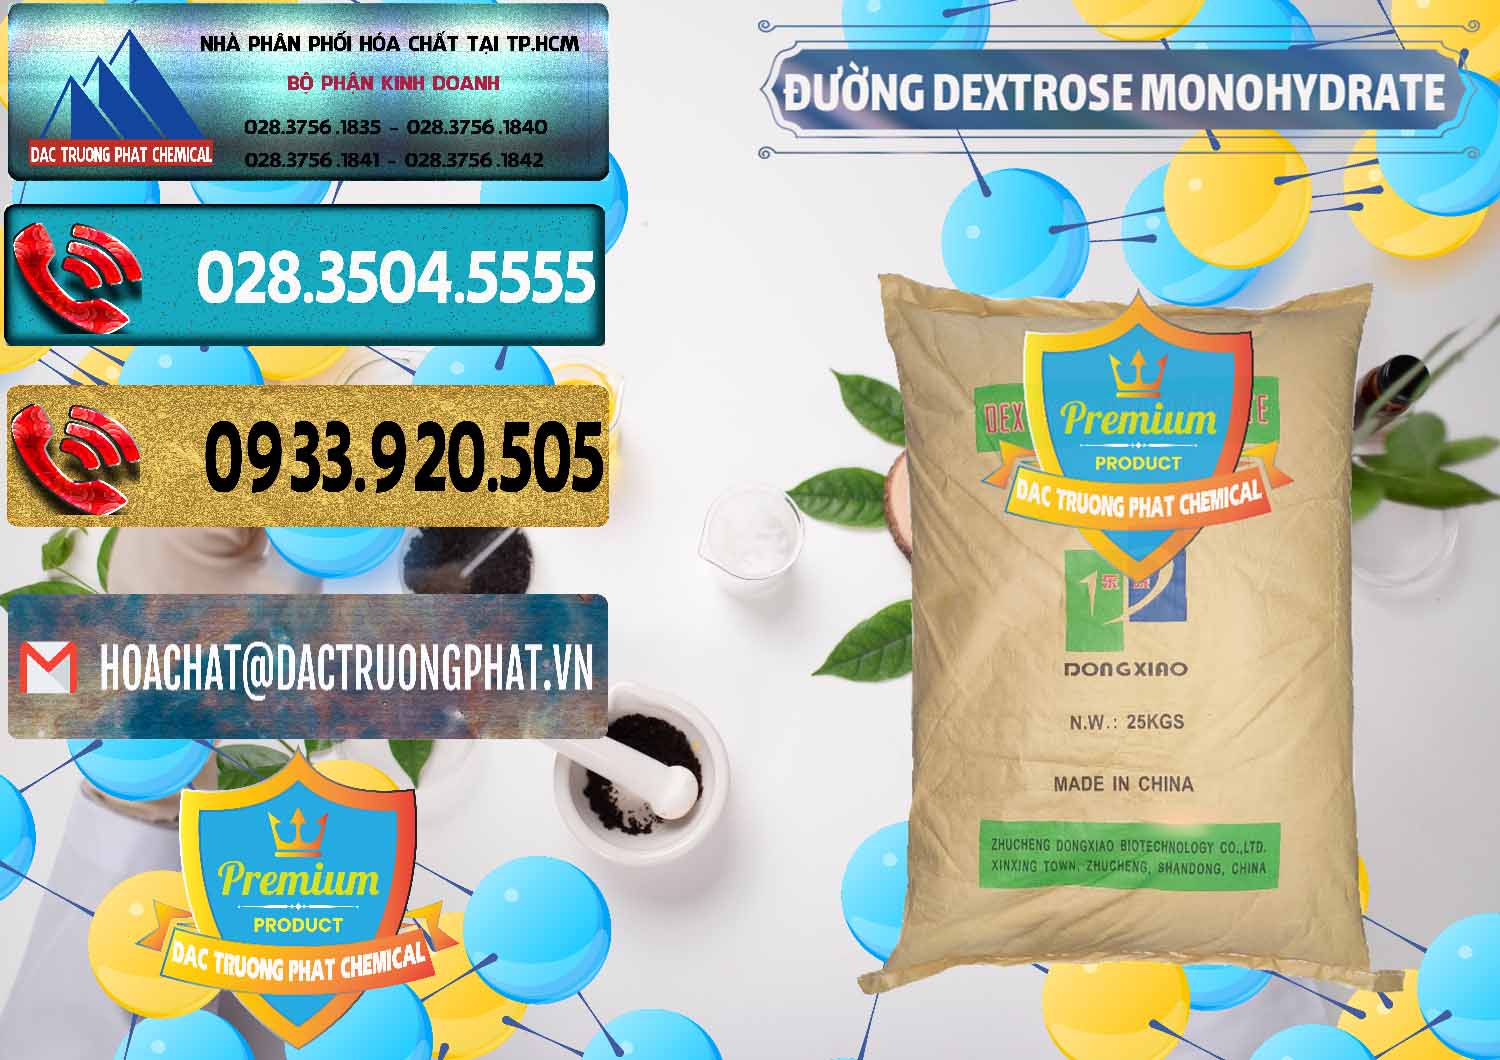 Nơi bán _ phân phối Đường Dextrose Monohydrate Food Grade Dongxiao Trung Quốc China - 0063 - Nhà phân phối ( nhập khẩu ) hóa chất tại TP.HCM - hoachatdetnhuom.com